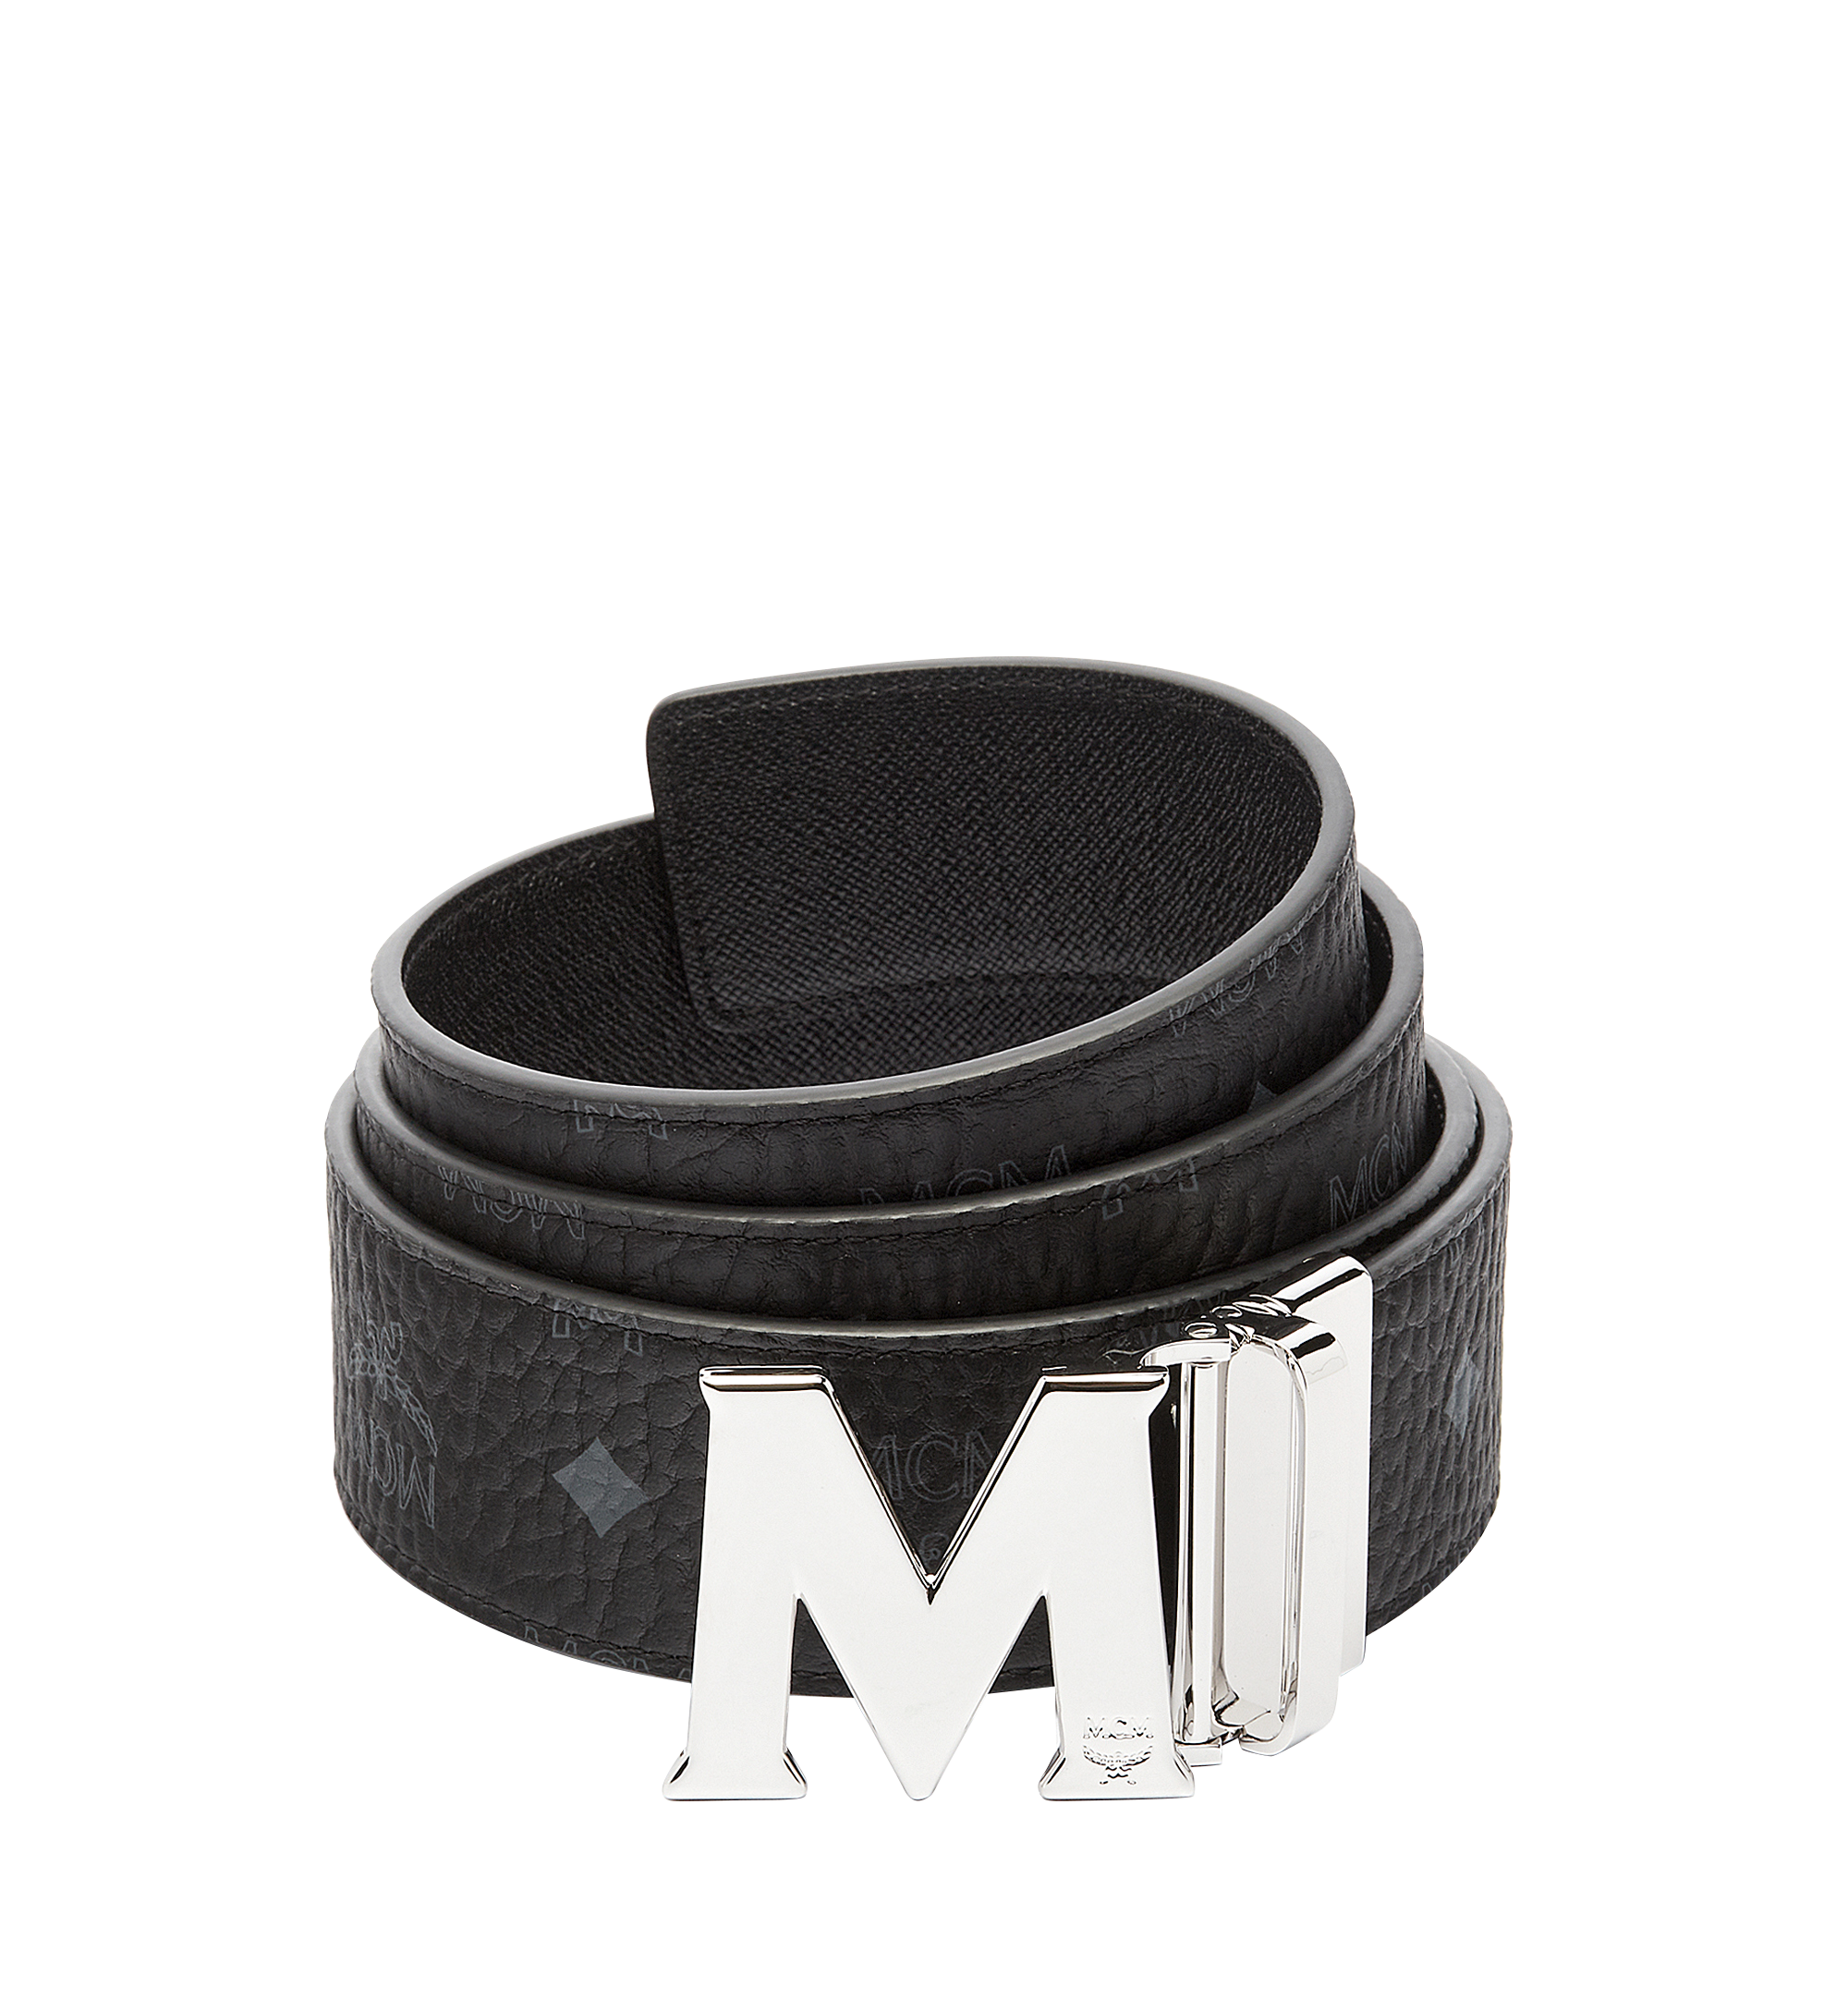 Designer Leather Accessories For Men | MCM® US